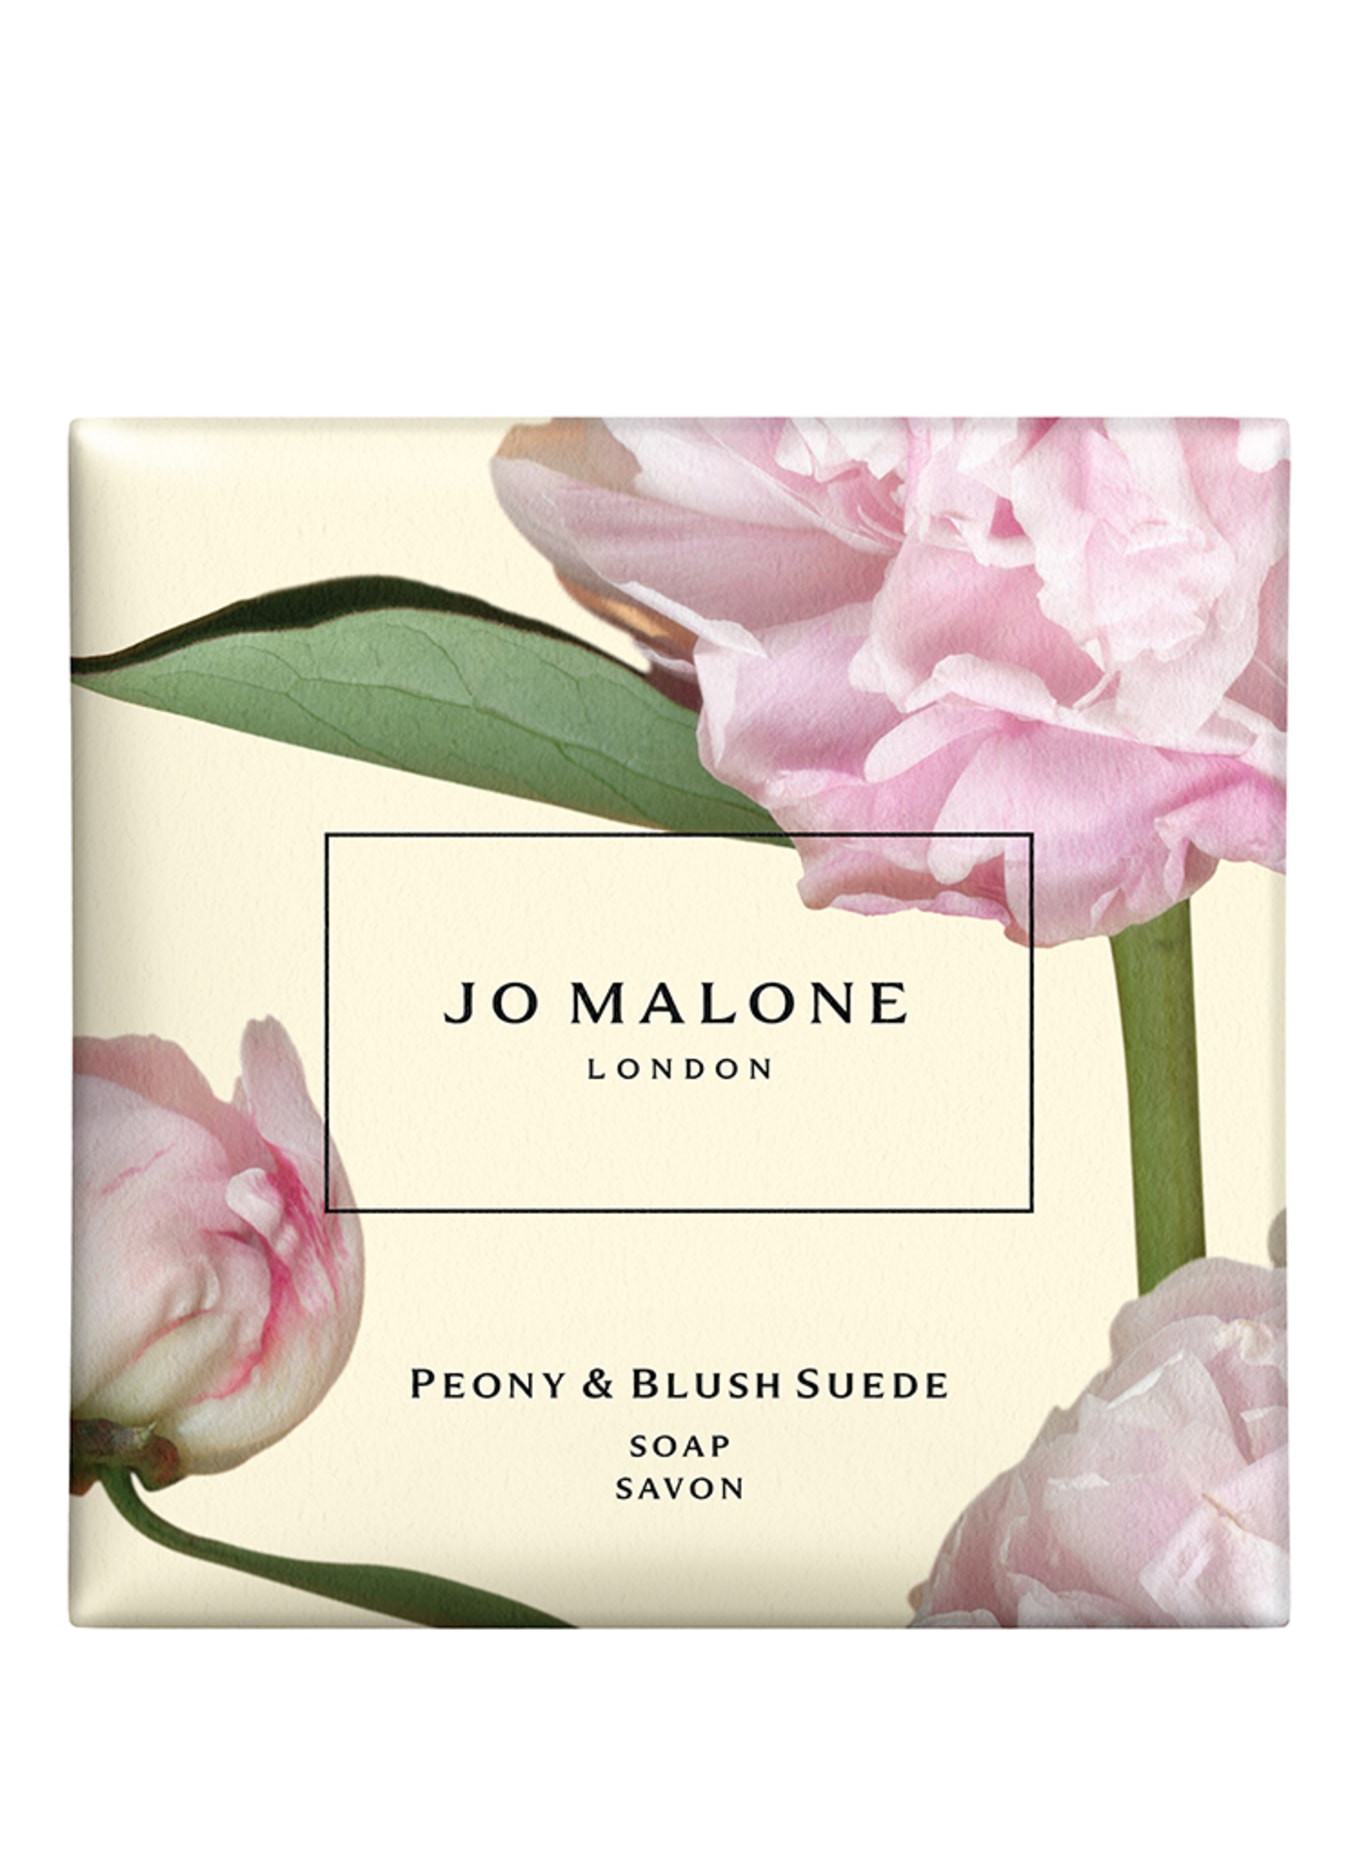 JO MALONE LONDON PEONY & BLUSH SUEDESOAP (Bild 1)